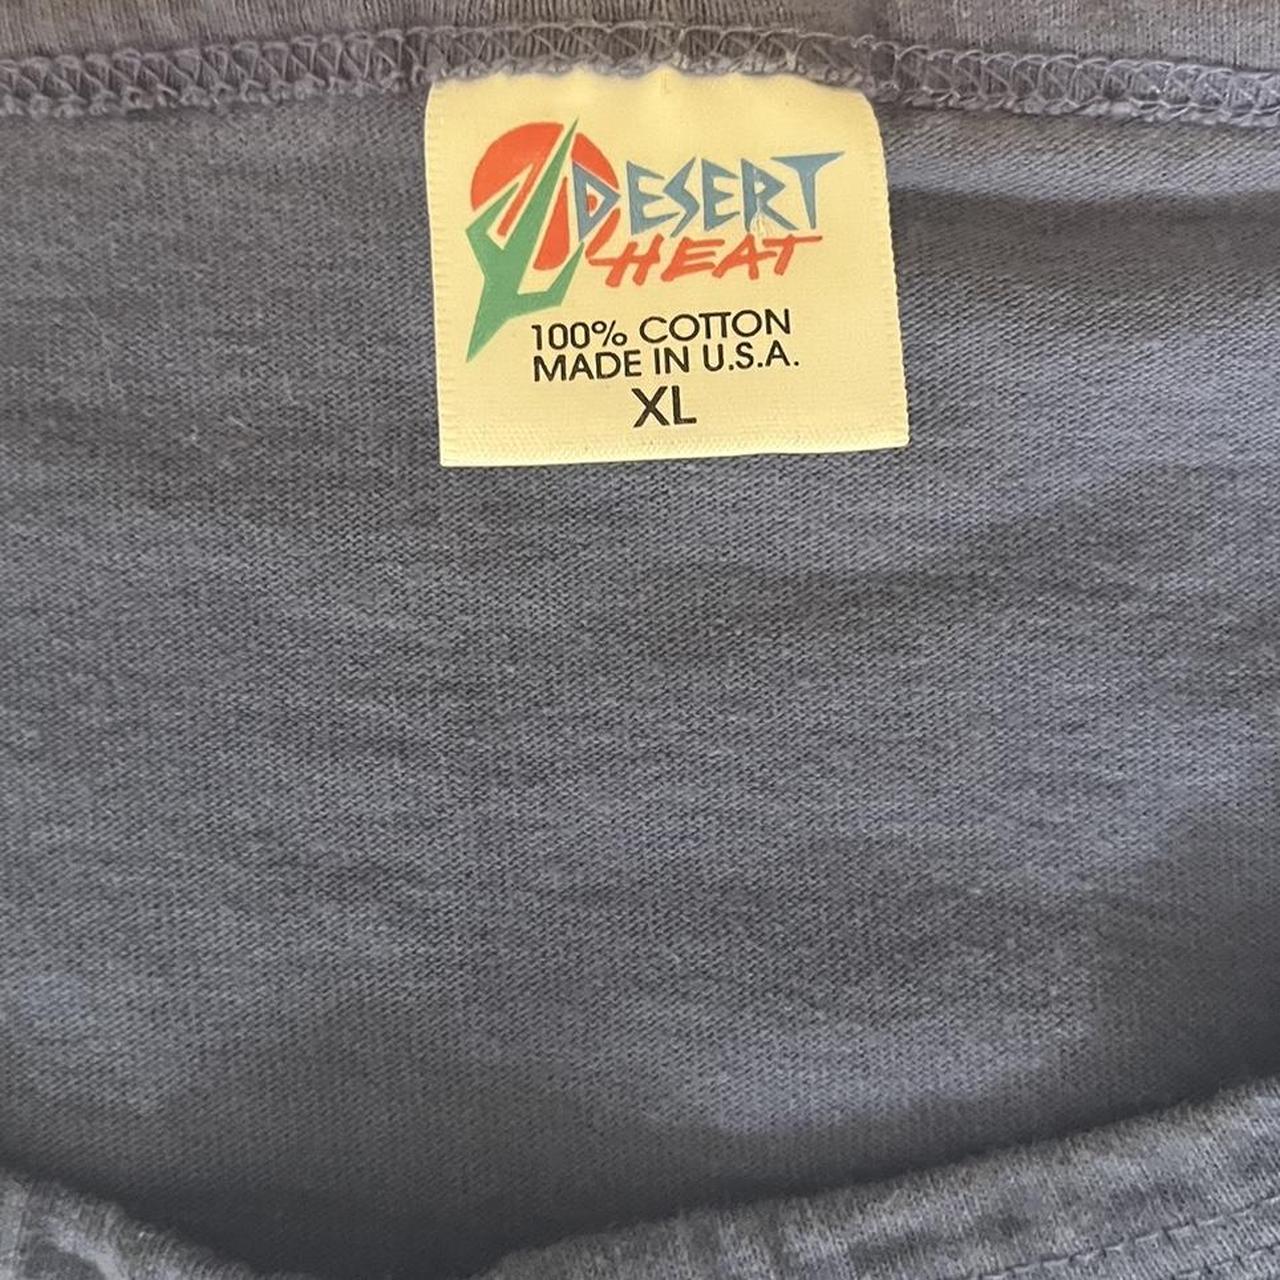 Maui Desert Heat shirt size : XL Feel free to... - Depop